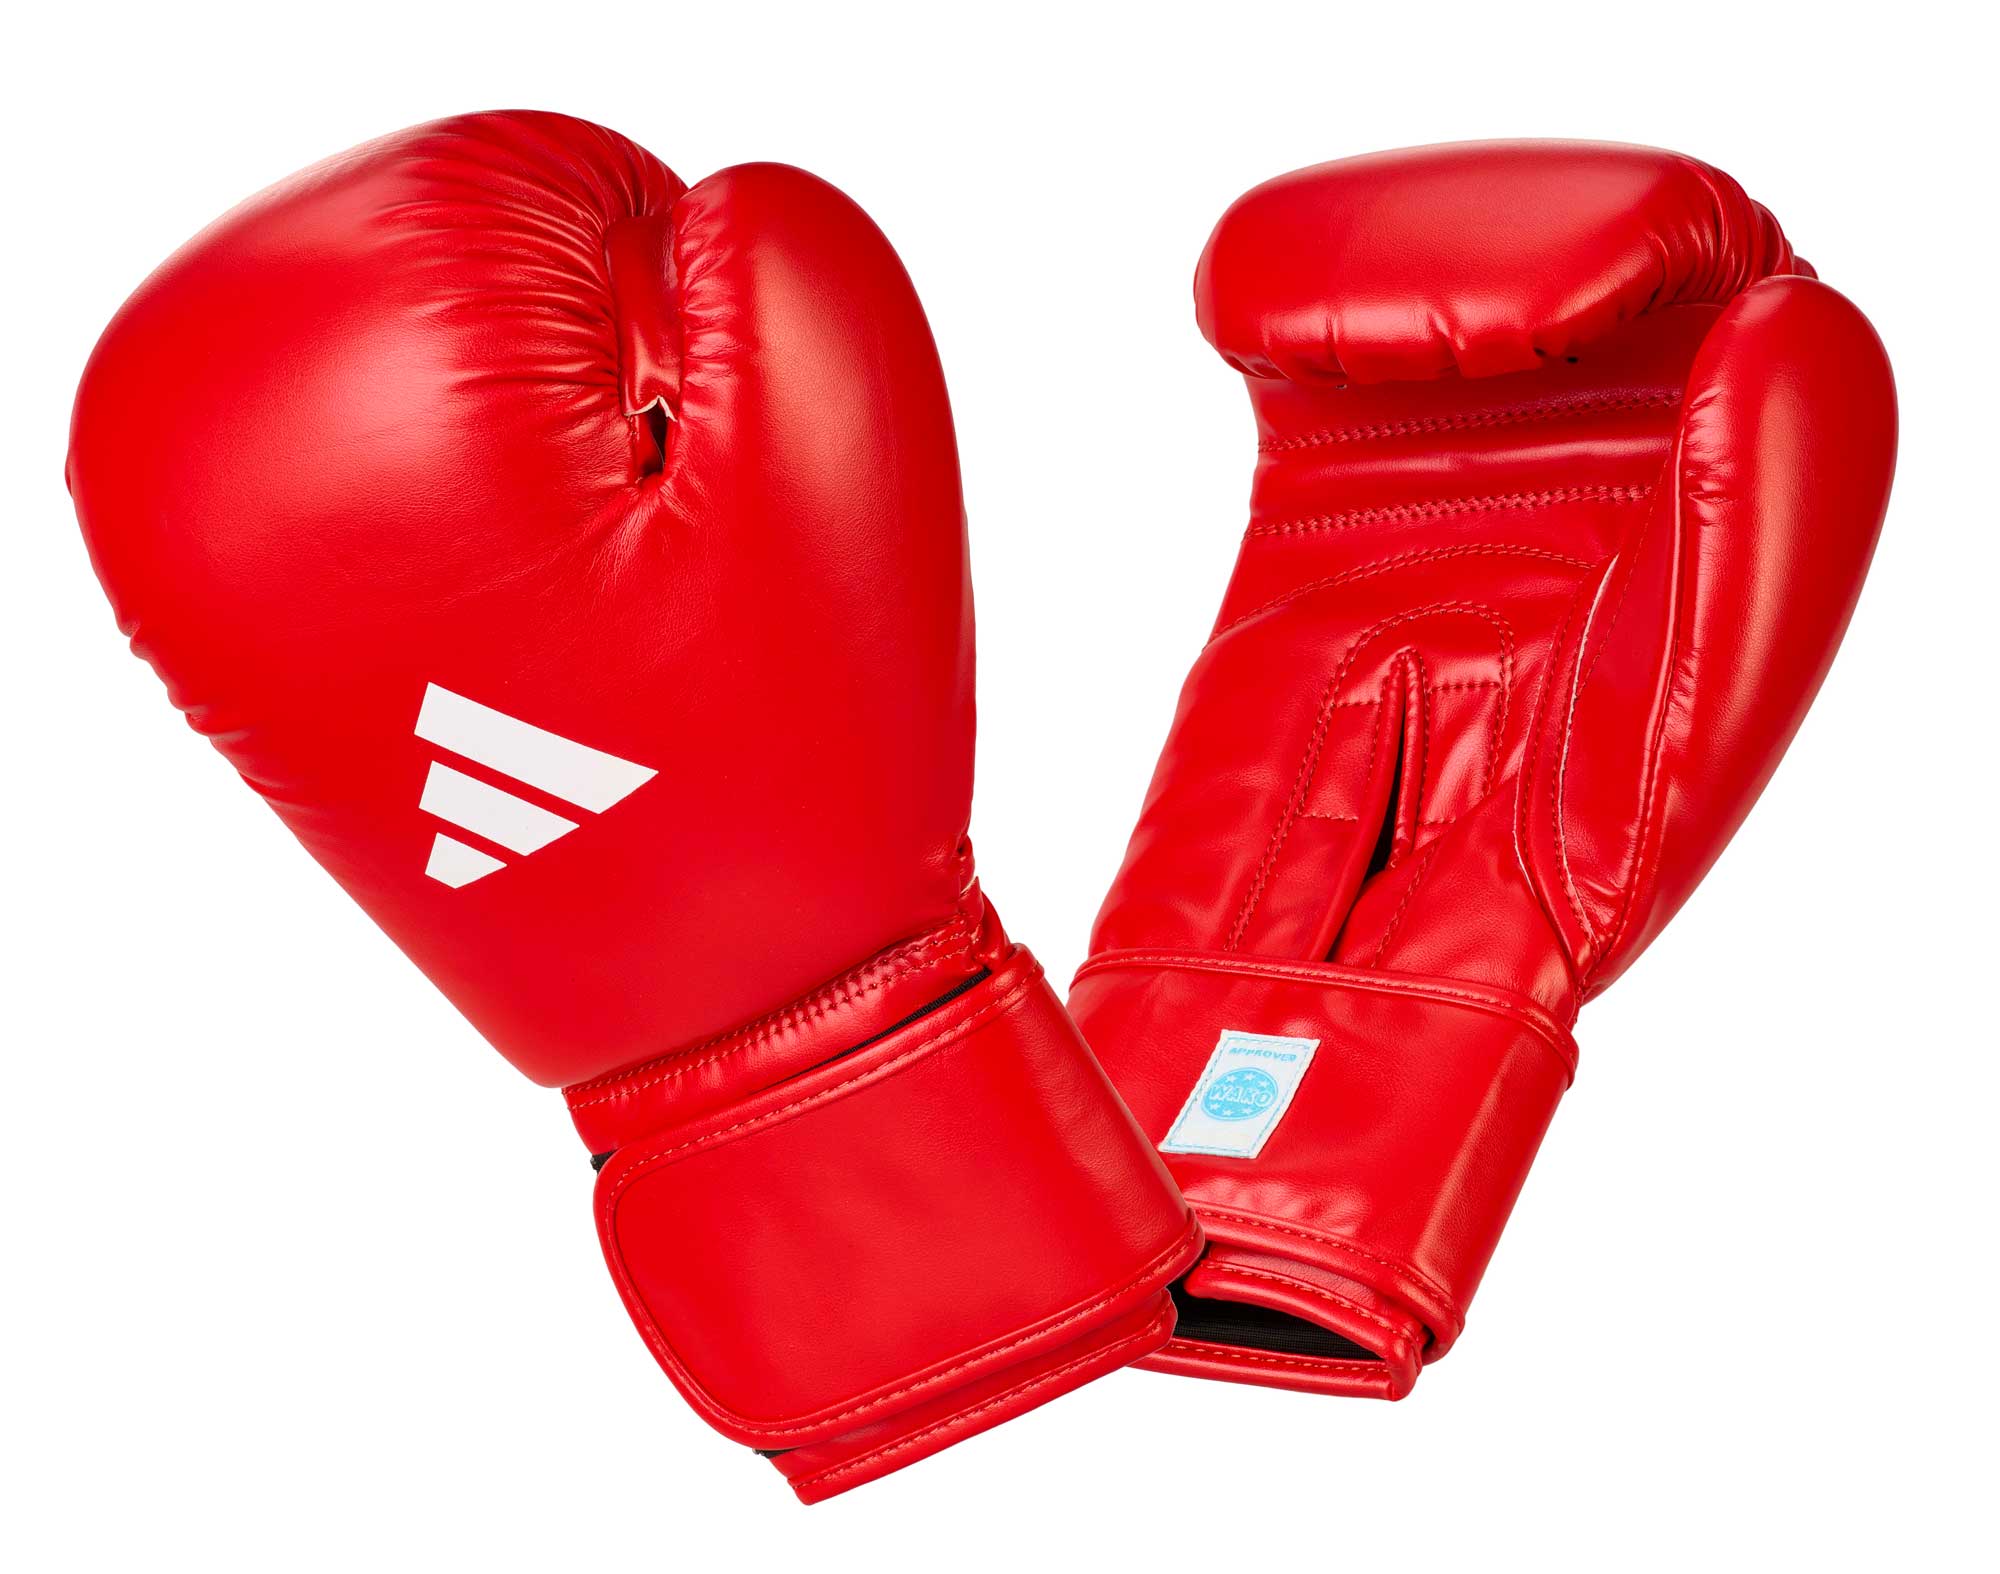 adidas Amateur Boxing Gloves Leather - red, ADIWAKOG1